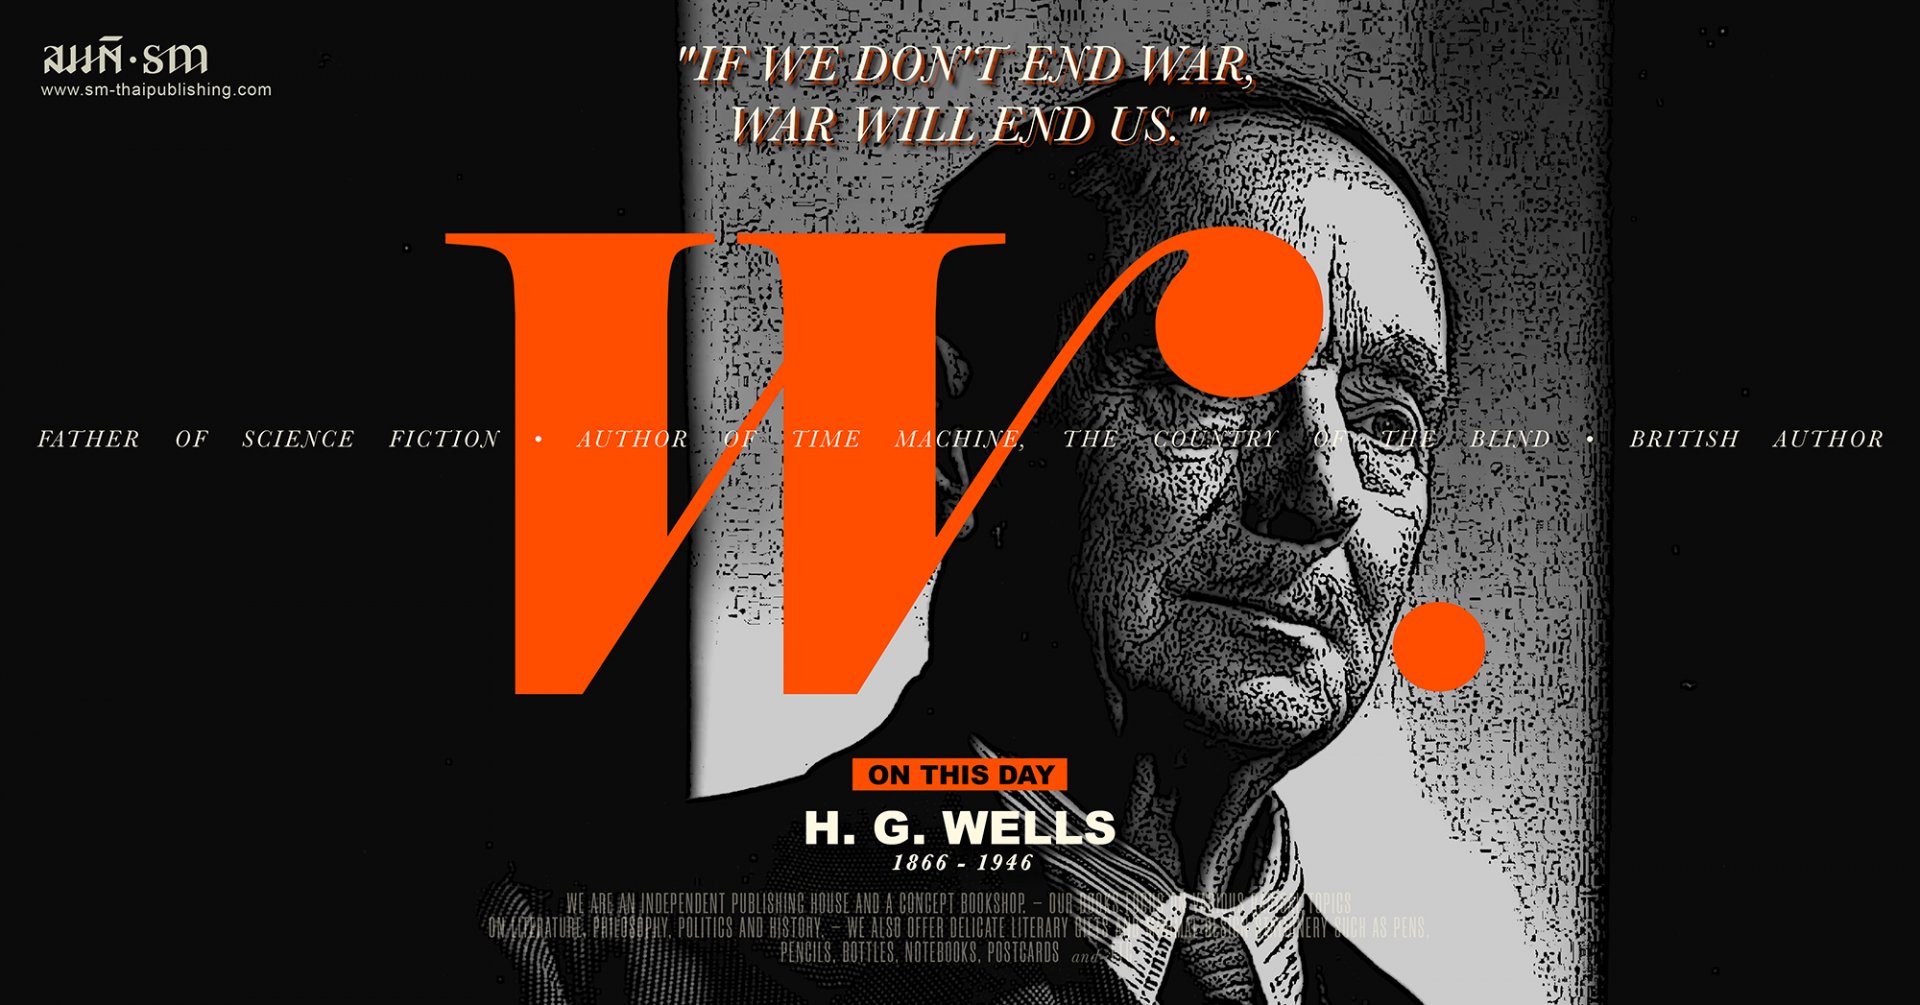 เอช. จี. เวลส์ (H. G. Wells)